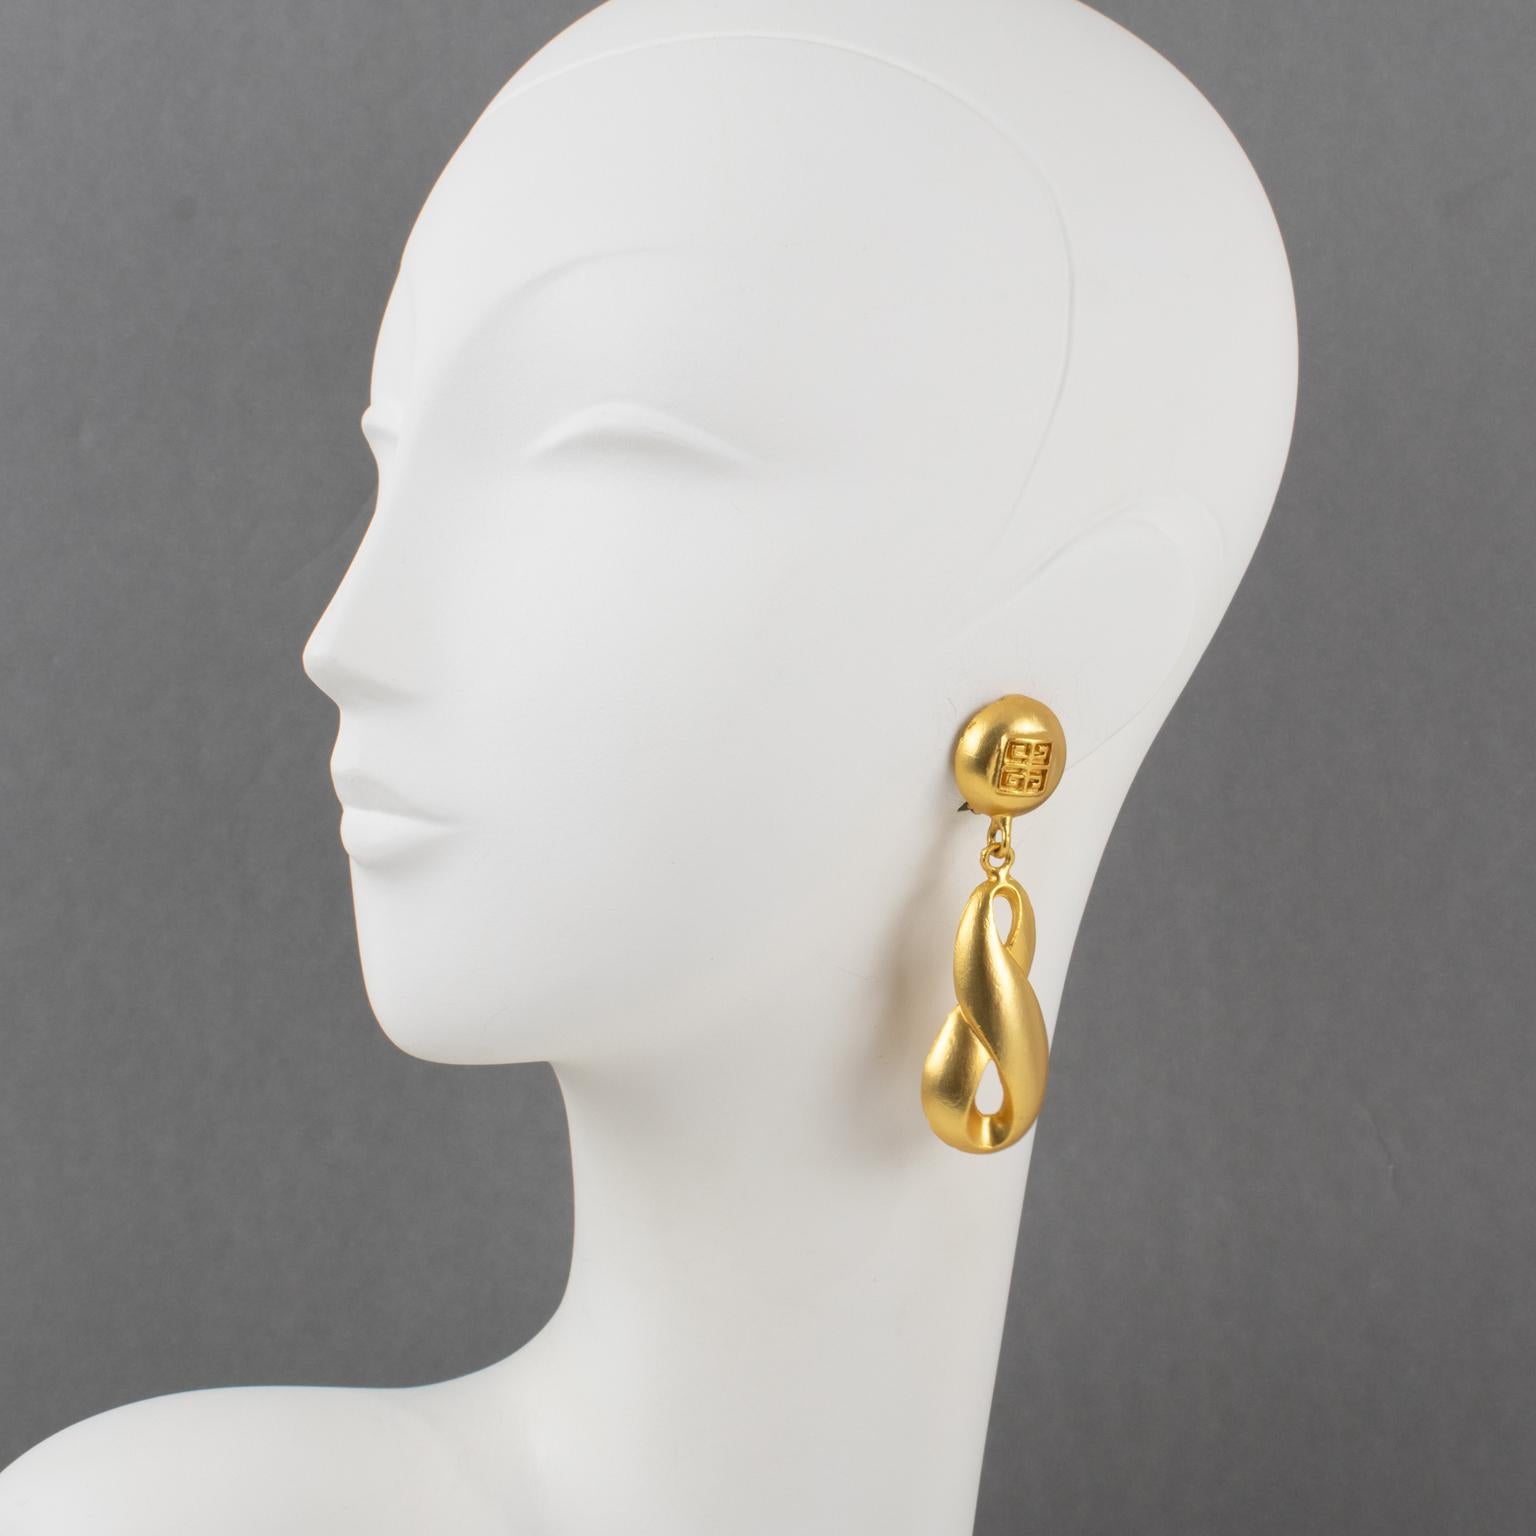 Diese trendigen und stilvollen Givenchy-Ohrclips haben eine lange, baumelnde Form aus vergoldetem Metall mit satinierter Oberfläche. Sie sind auf der Vorderseite mit dem kultigen Givenchy-Logo signiert.
Abmessungen: 2,3 cm breit (0,94 Zoll) und 8 cm